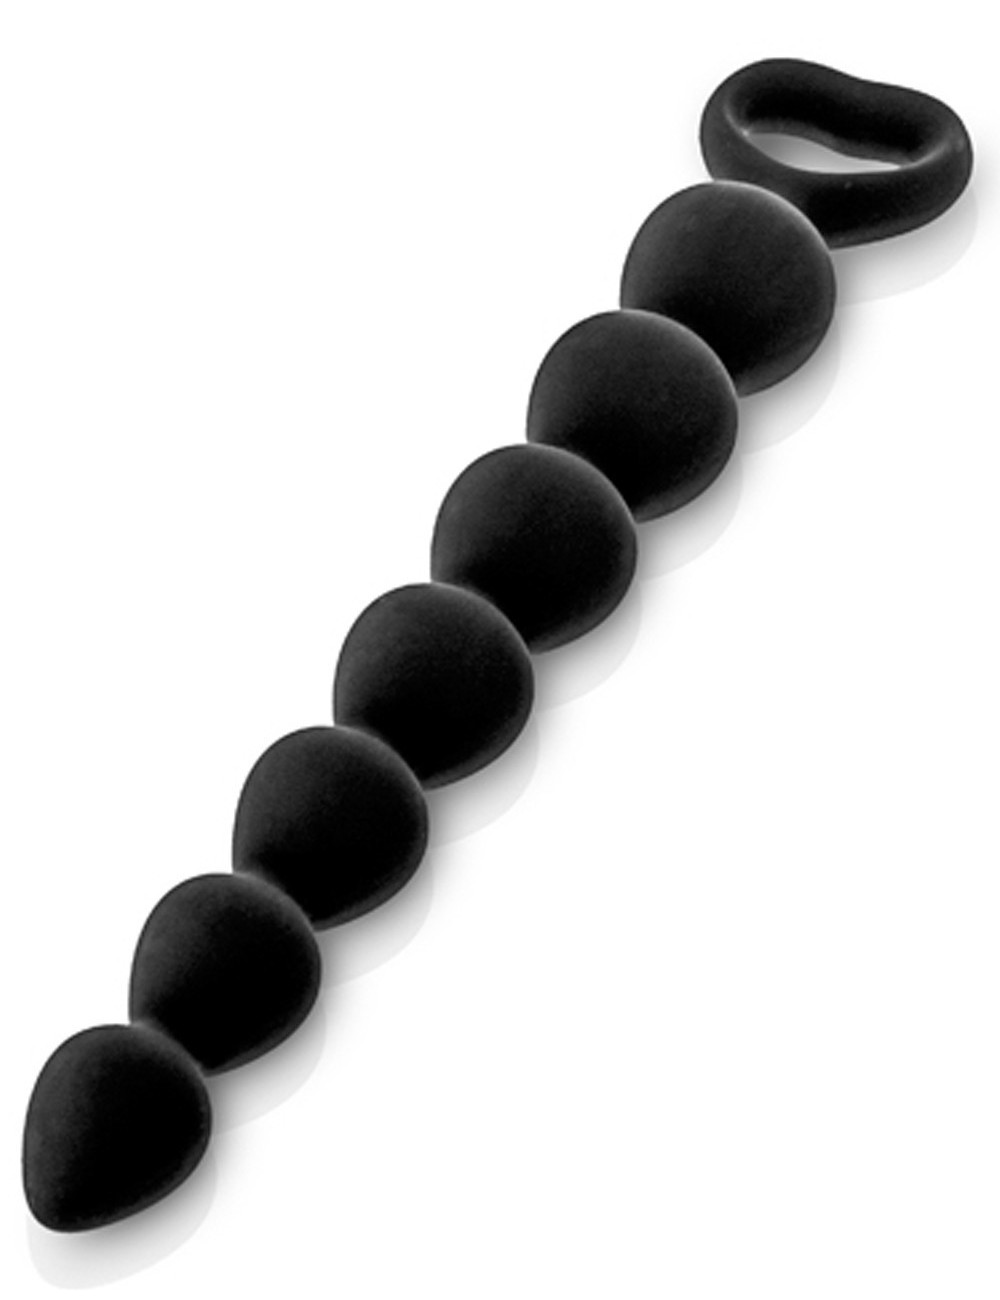 Sextoys - Godes & Plugs - Chapelet plug anal noire 27cm avec poignée de sécurité - CC5710042010 - Glamy